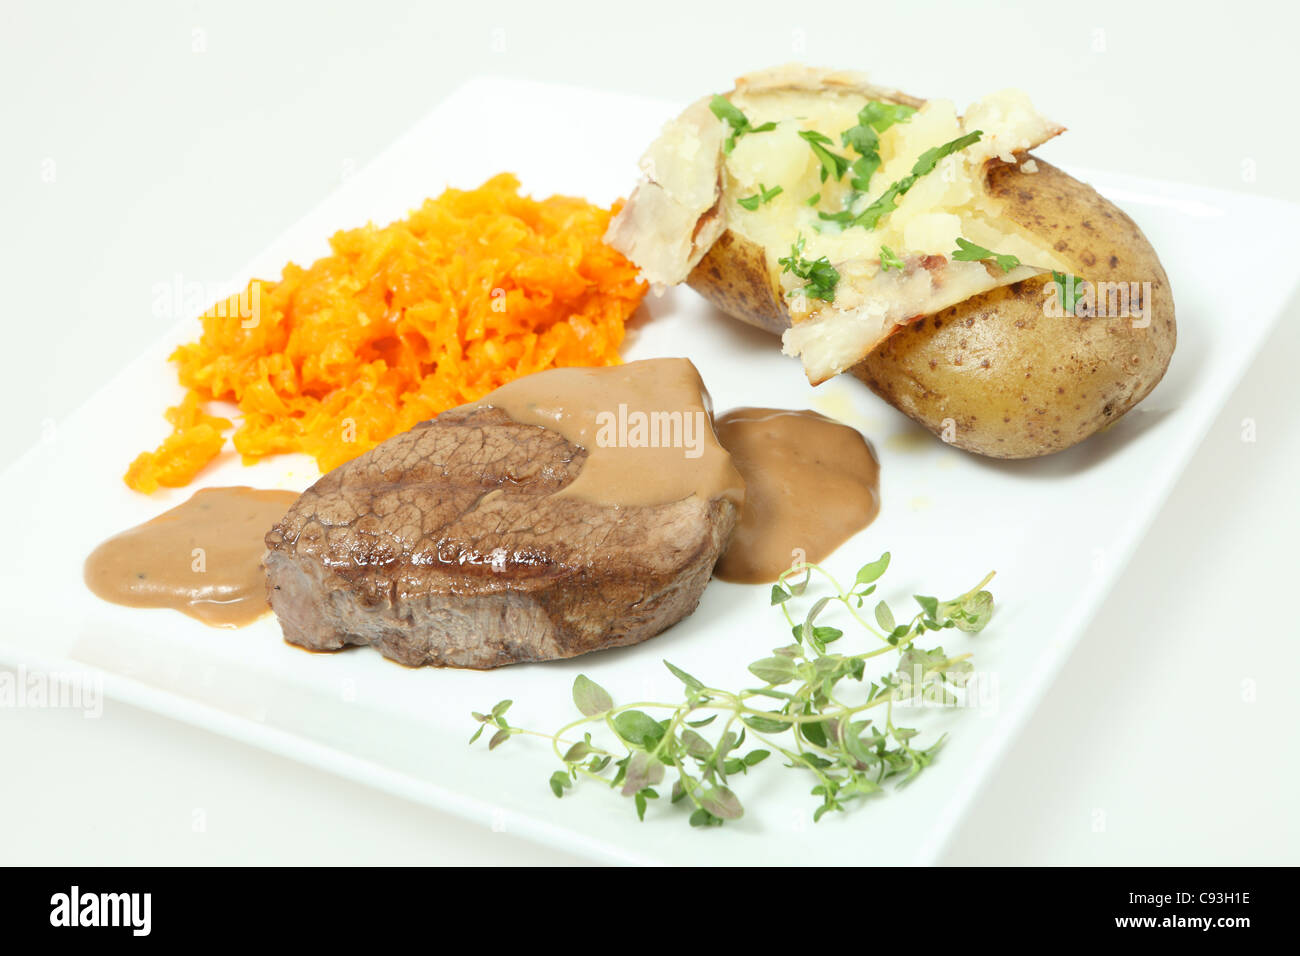 Un filet mignon de filet de boeuf servi avec des carottes braisées et une pomme de terre cuite au four. Garnir de persil et thym Banque D'Images